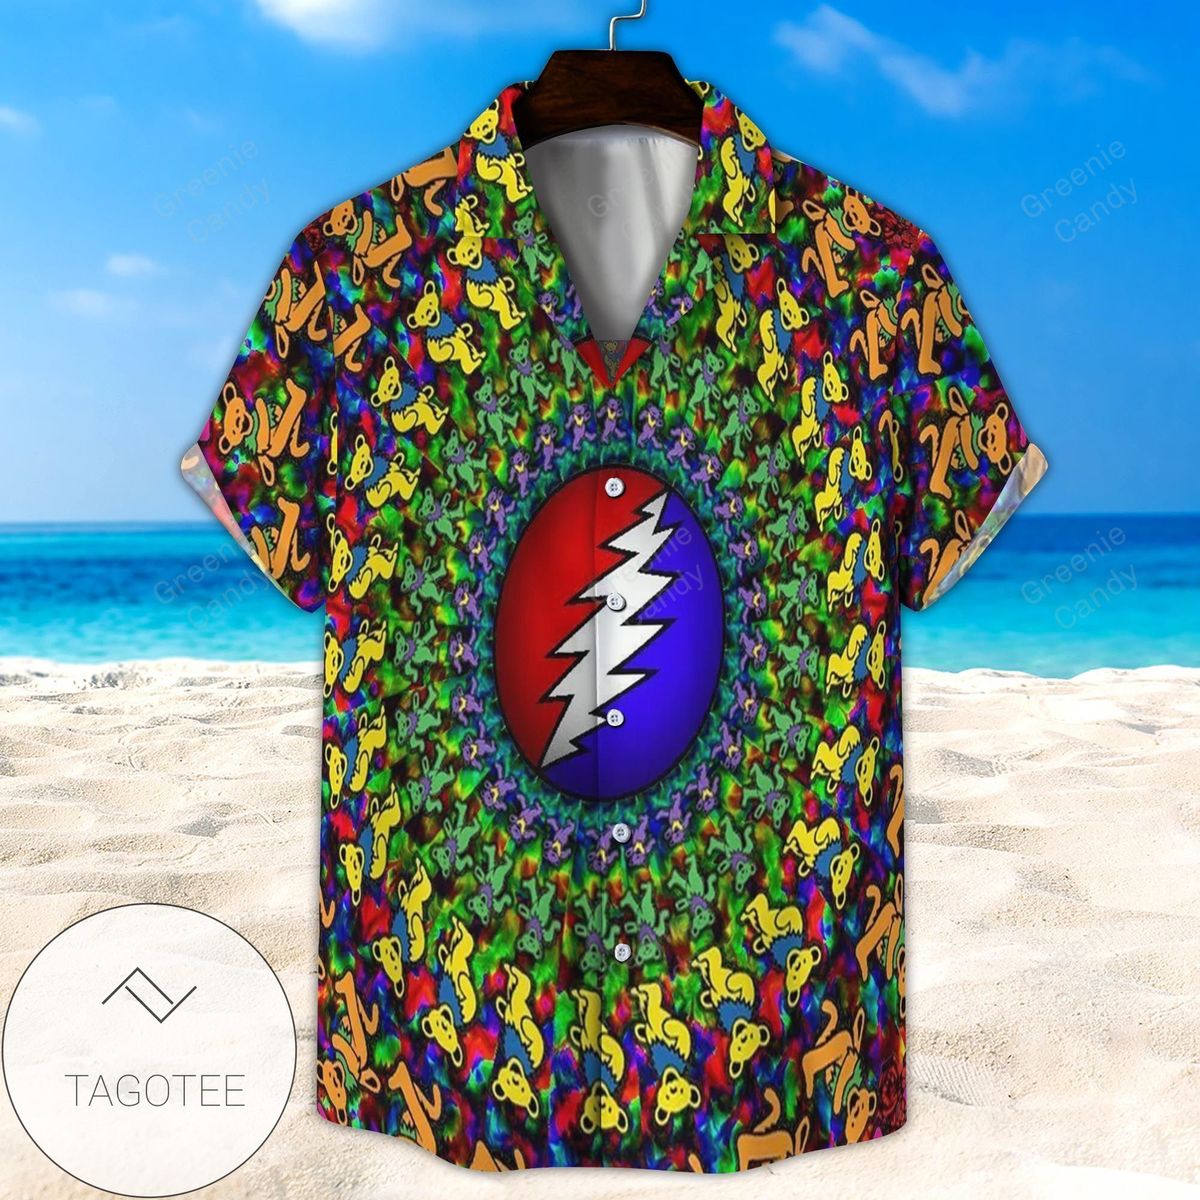 Grateful Dead Bears Seamless Circle All Over Print 3D Hawaiian Shirt And Beach Short